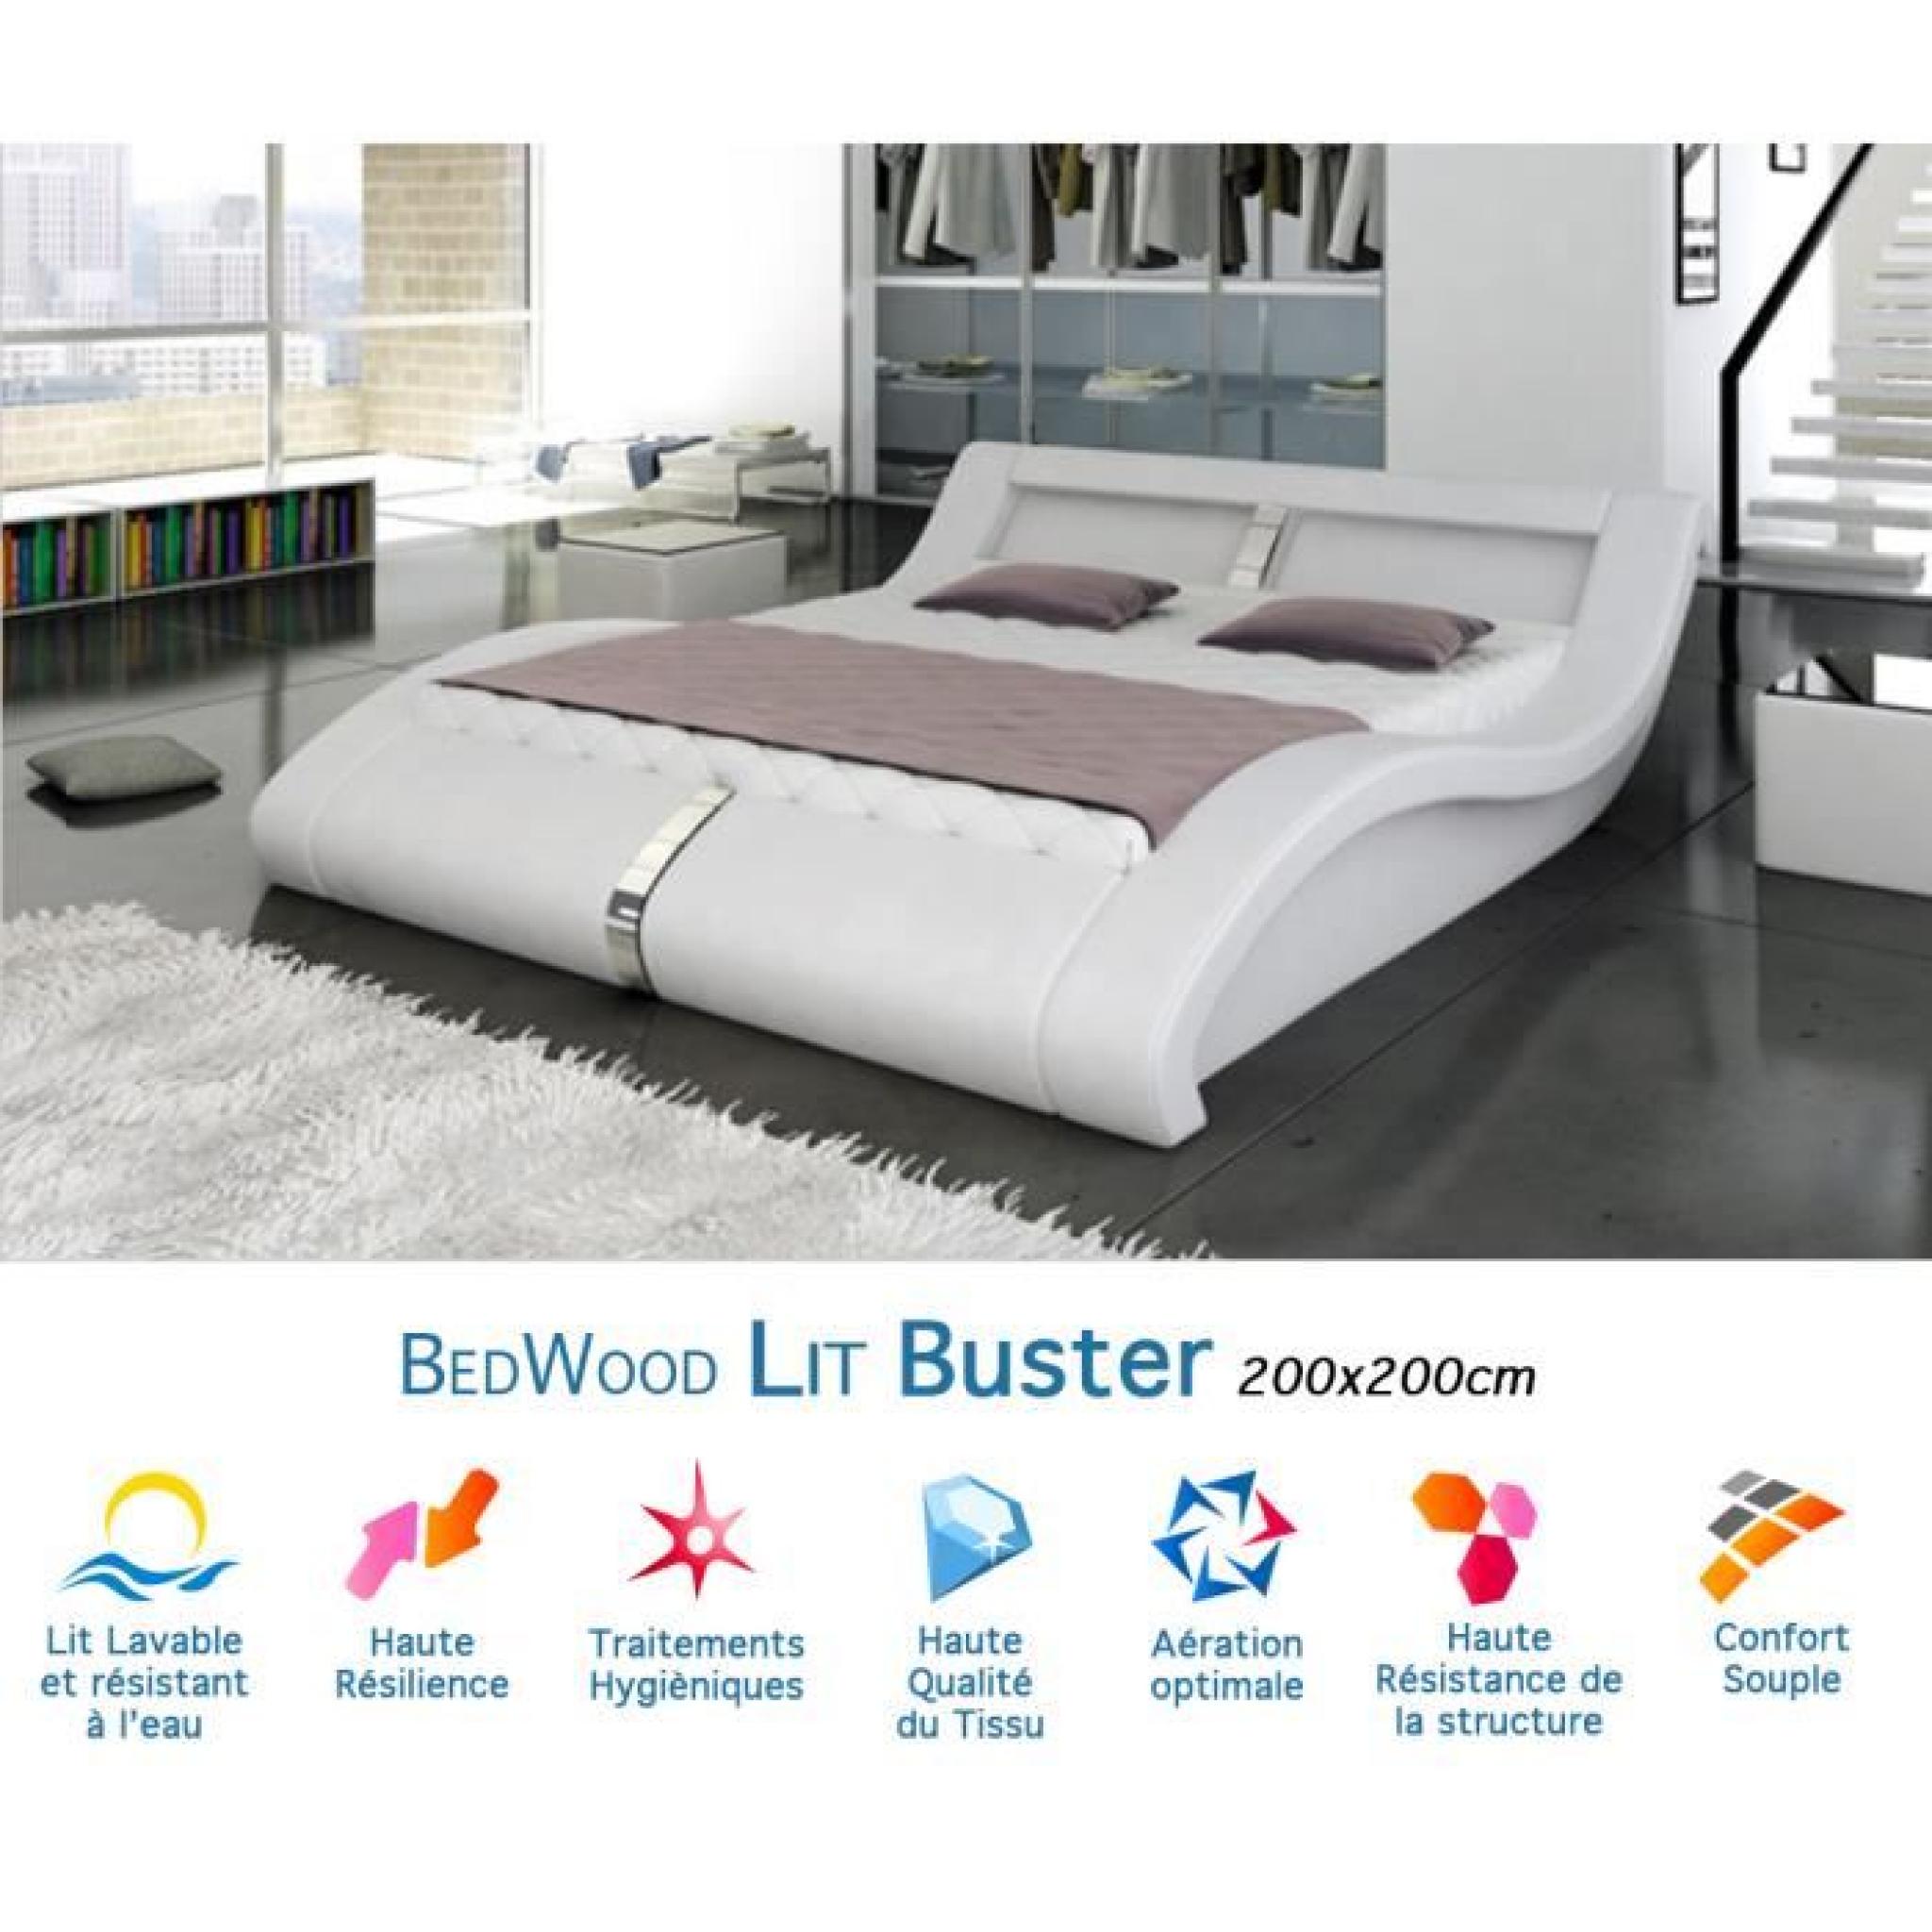 Lit Design Bedwood Buster 200x200cm